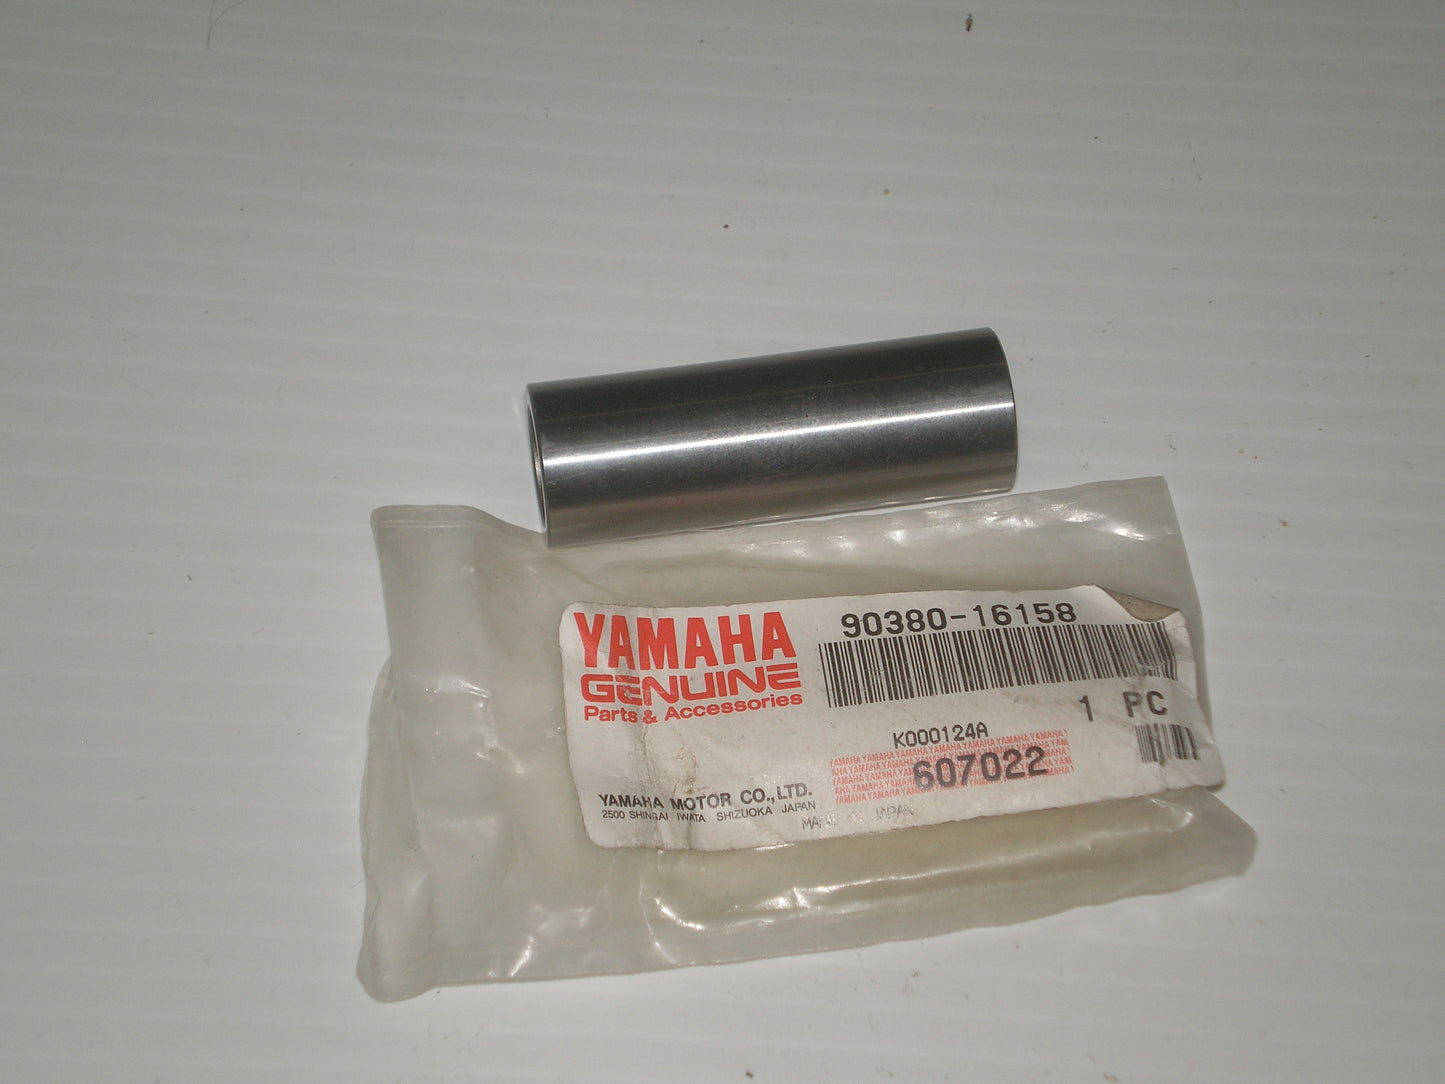 YAMAHA WR250 WR500 YZ125 YZ250 YZ490 FZ07 XSR700 MT07 Suspension Solid Bushing 90380-16158